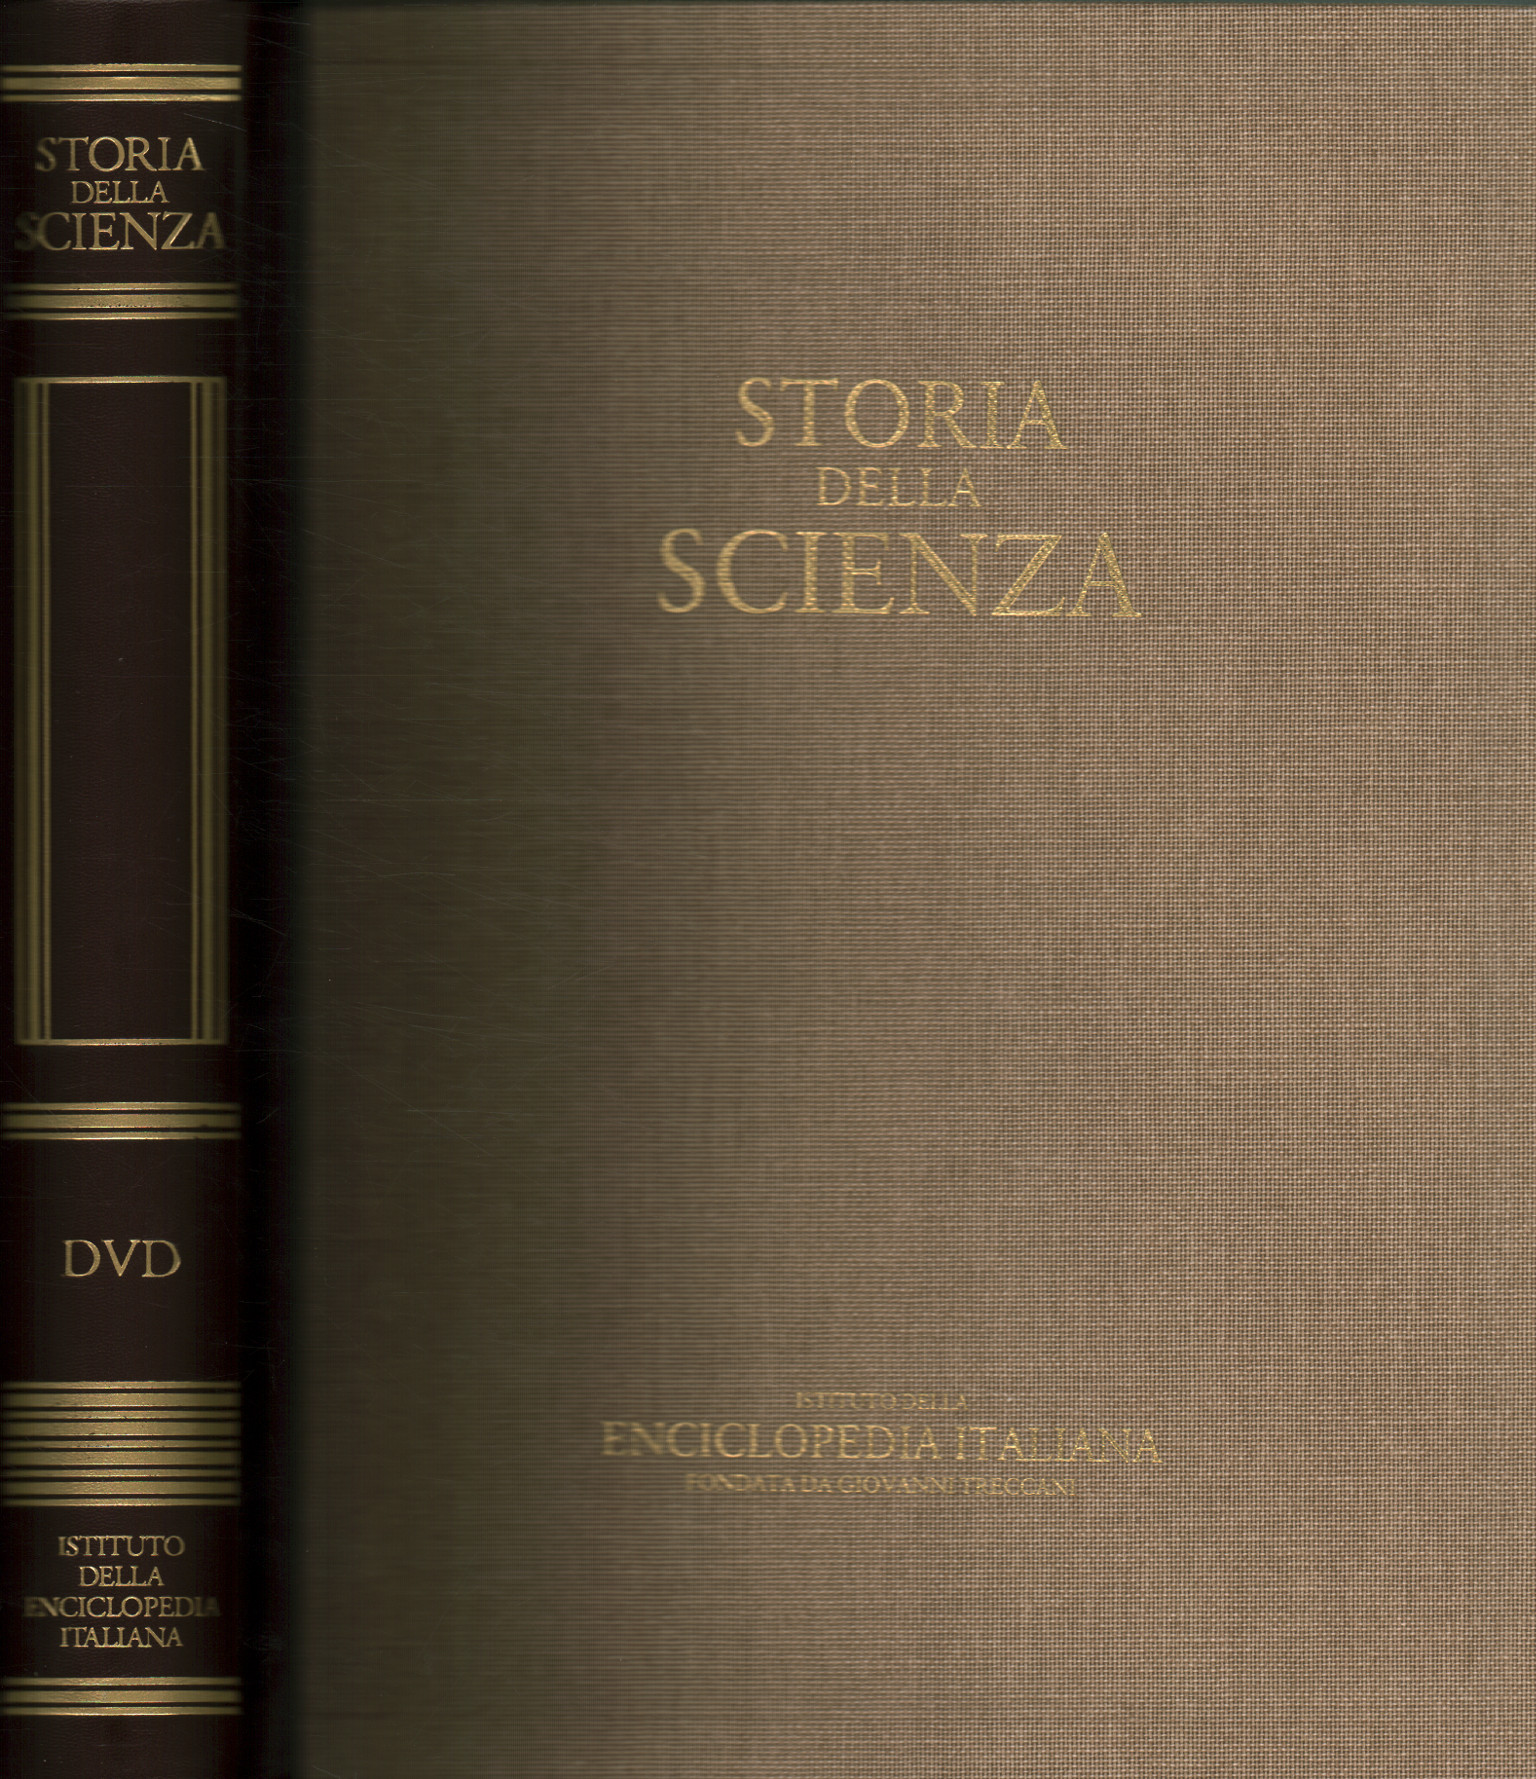 Storia della scienza DVD,Storia della scienza. DVD